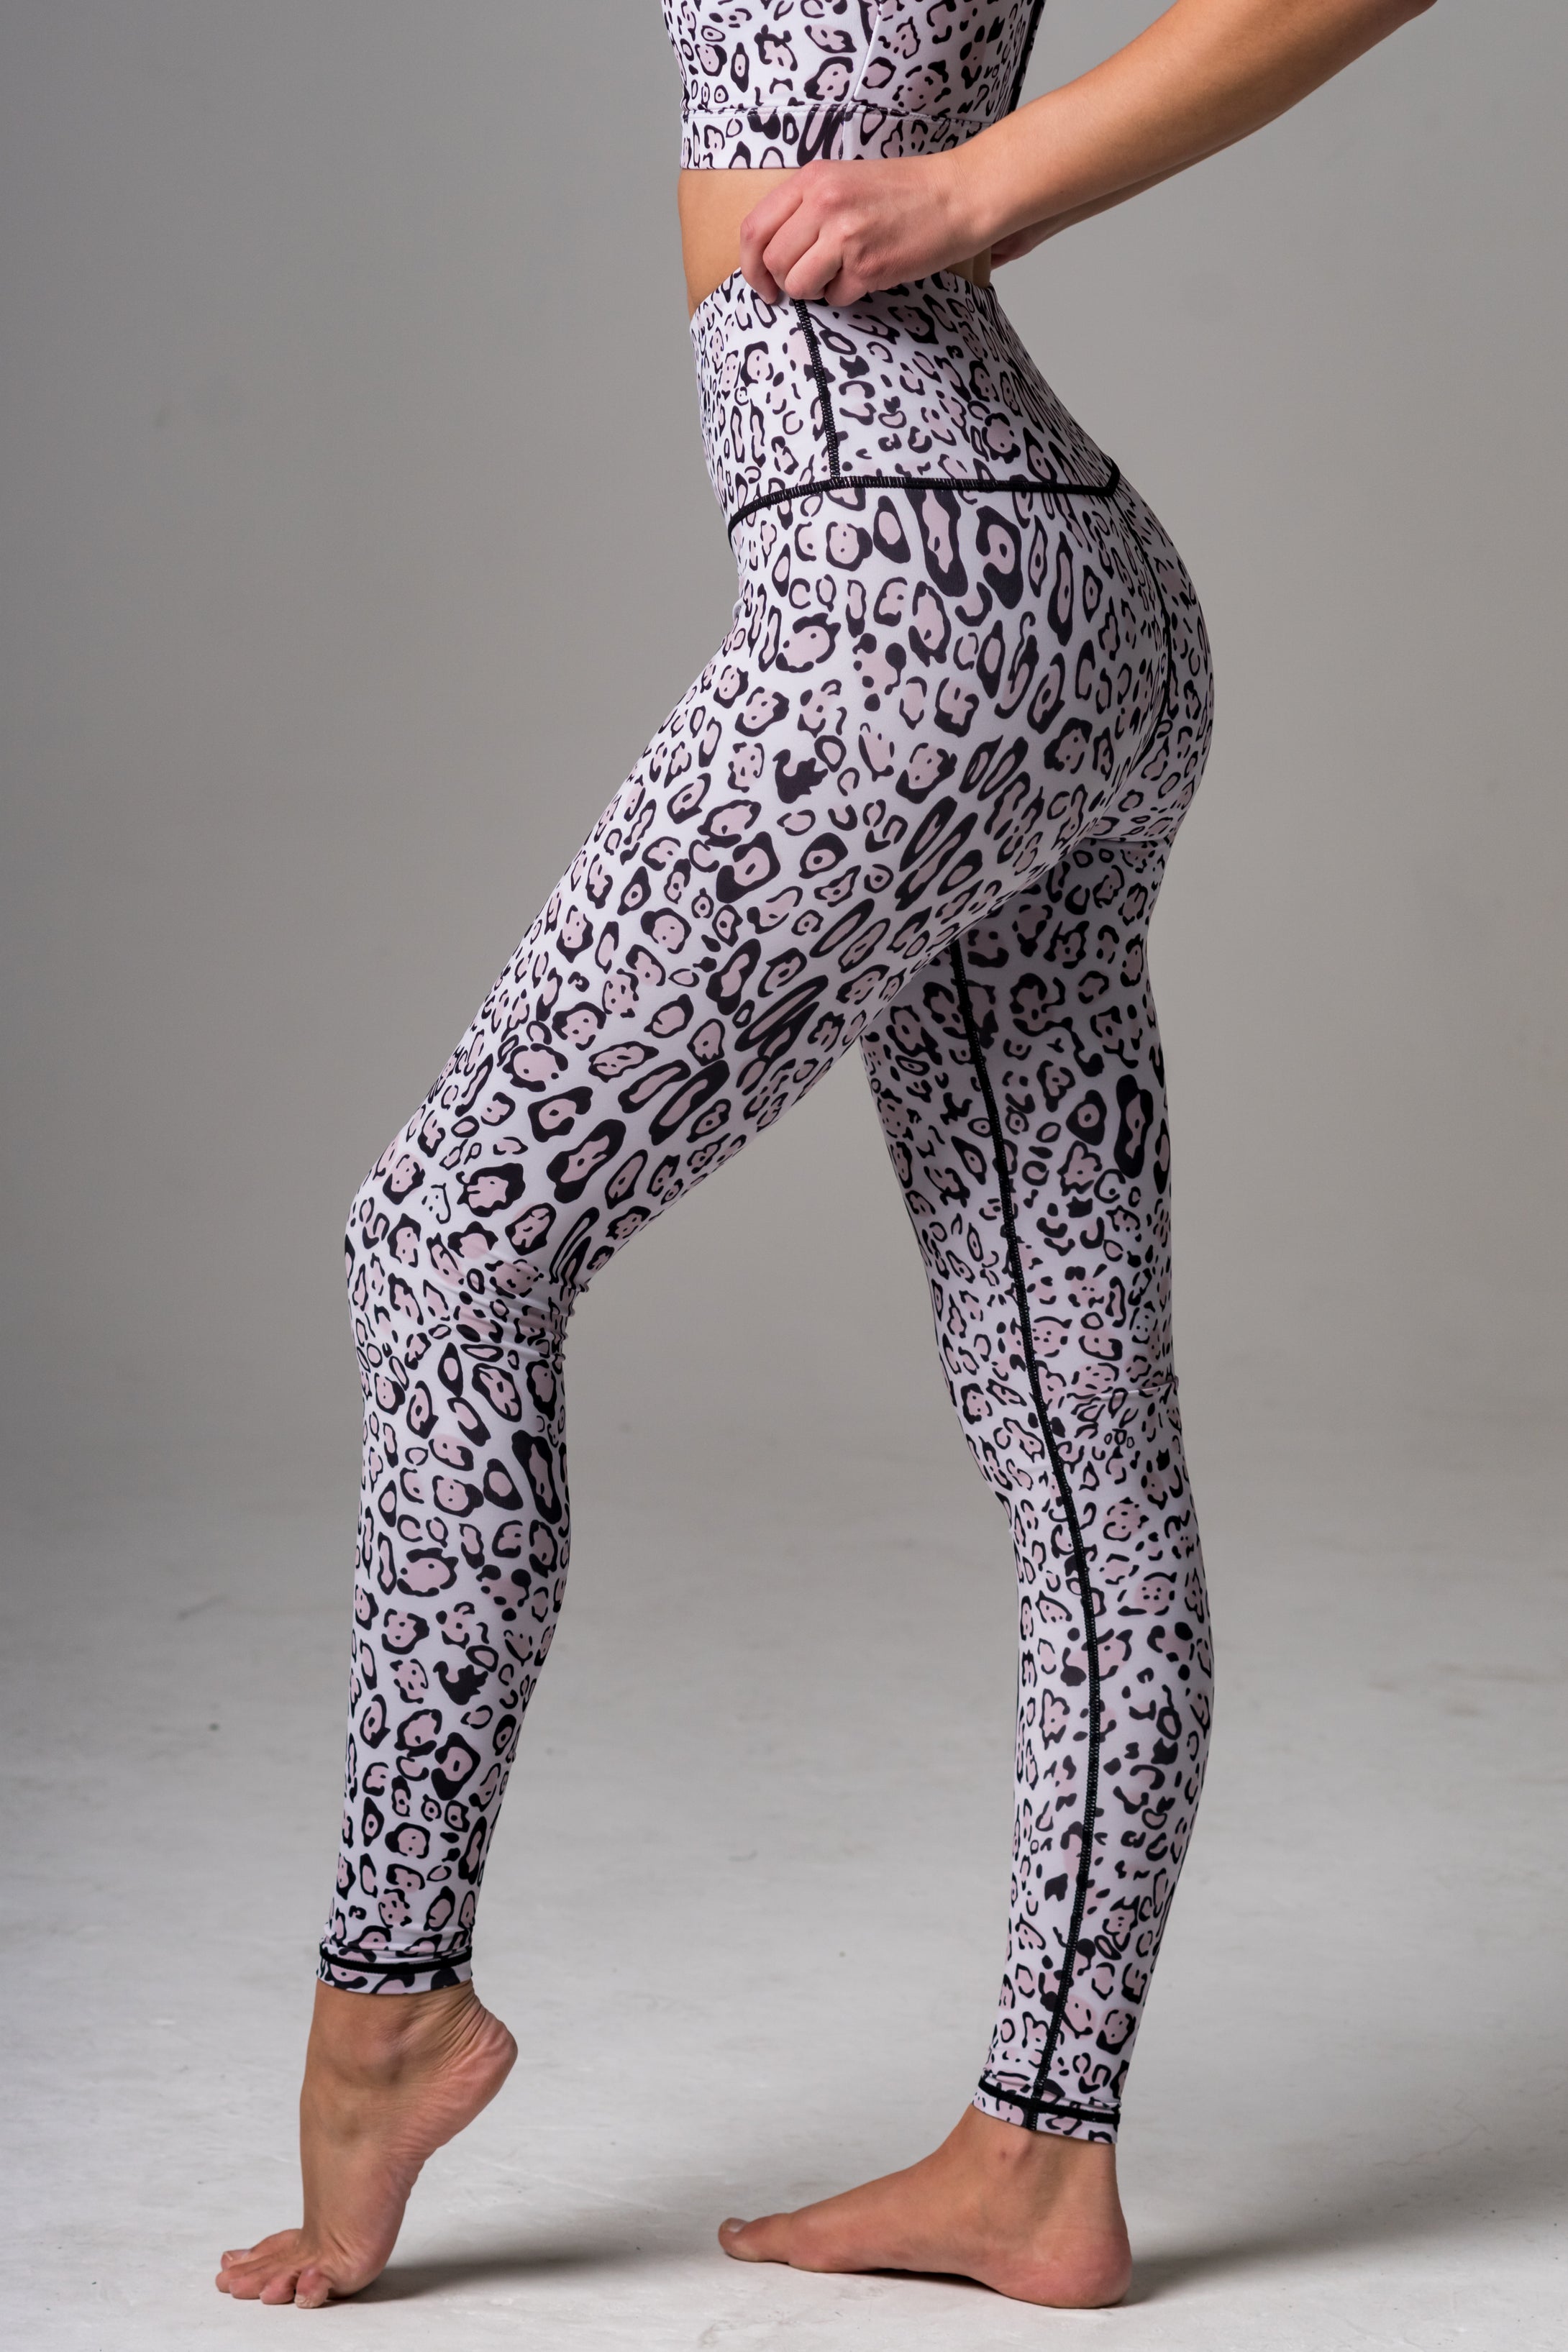 Mirna High Waist Leggings- Leopard Print - Beat Outdoor Gear